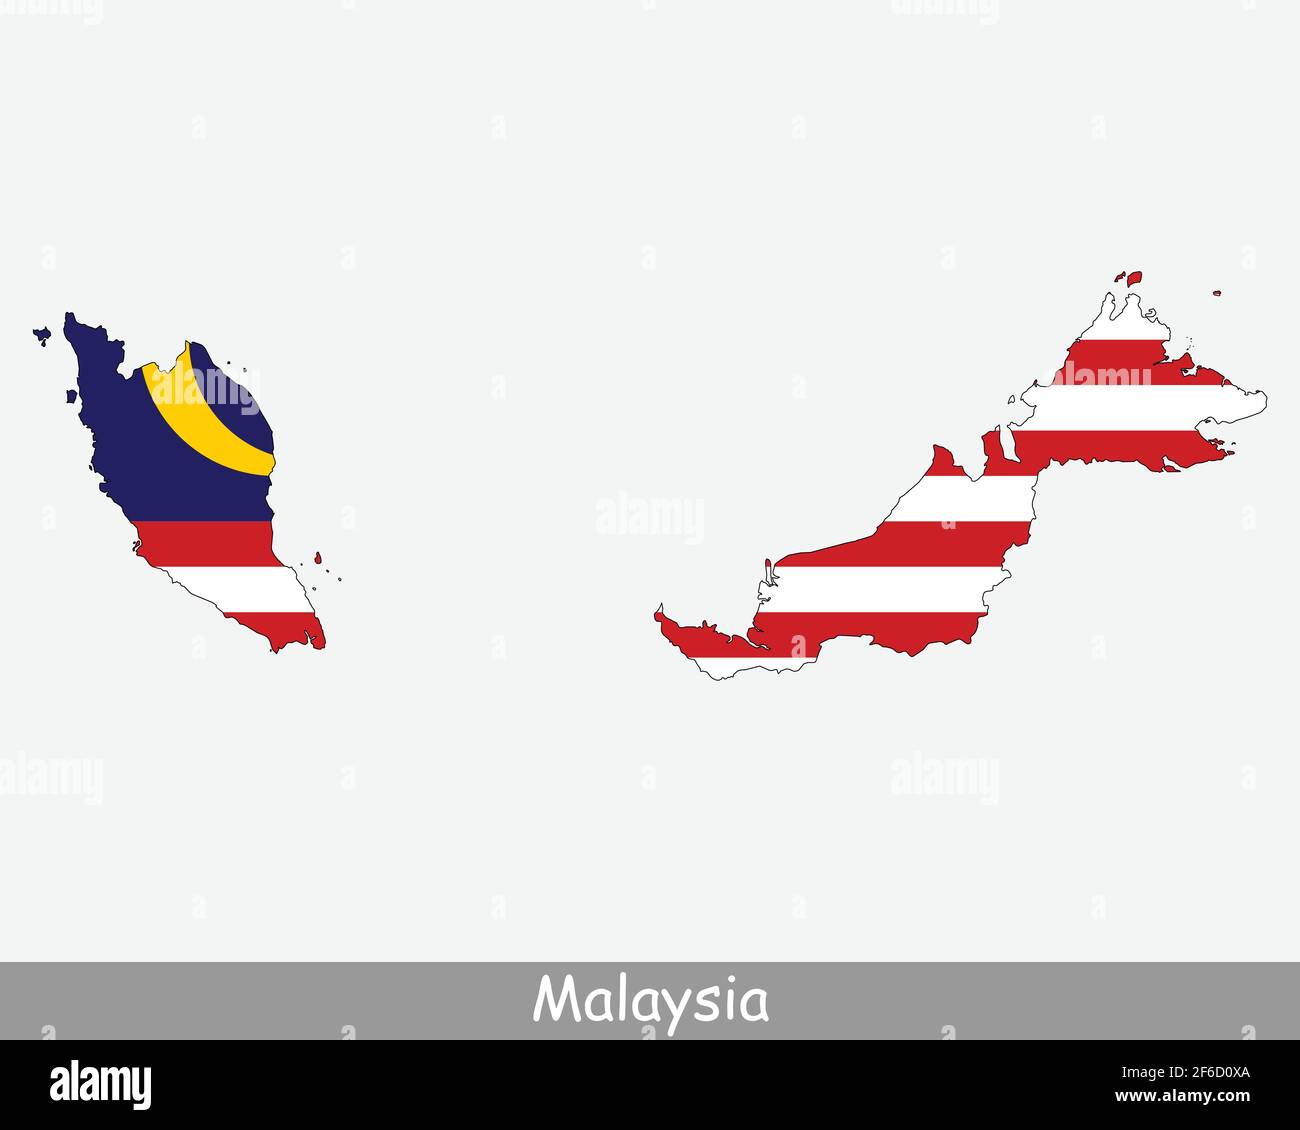 Bandiera della Malesia. Mappa della Malesia con la bandiera nazionale malese isolata su sfondo bianco. Illustrazione vettoriale. Illustrazione Vettoriale